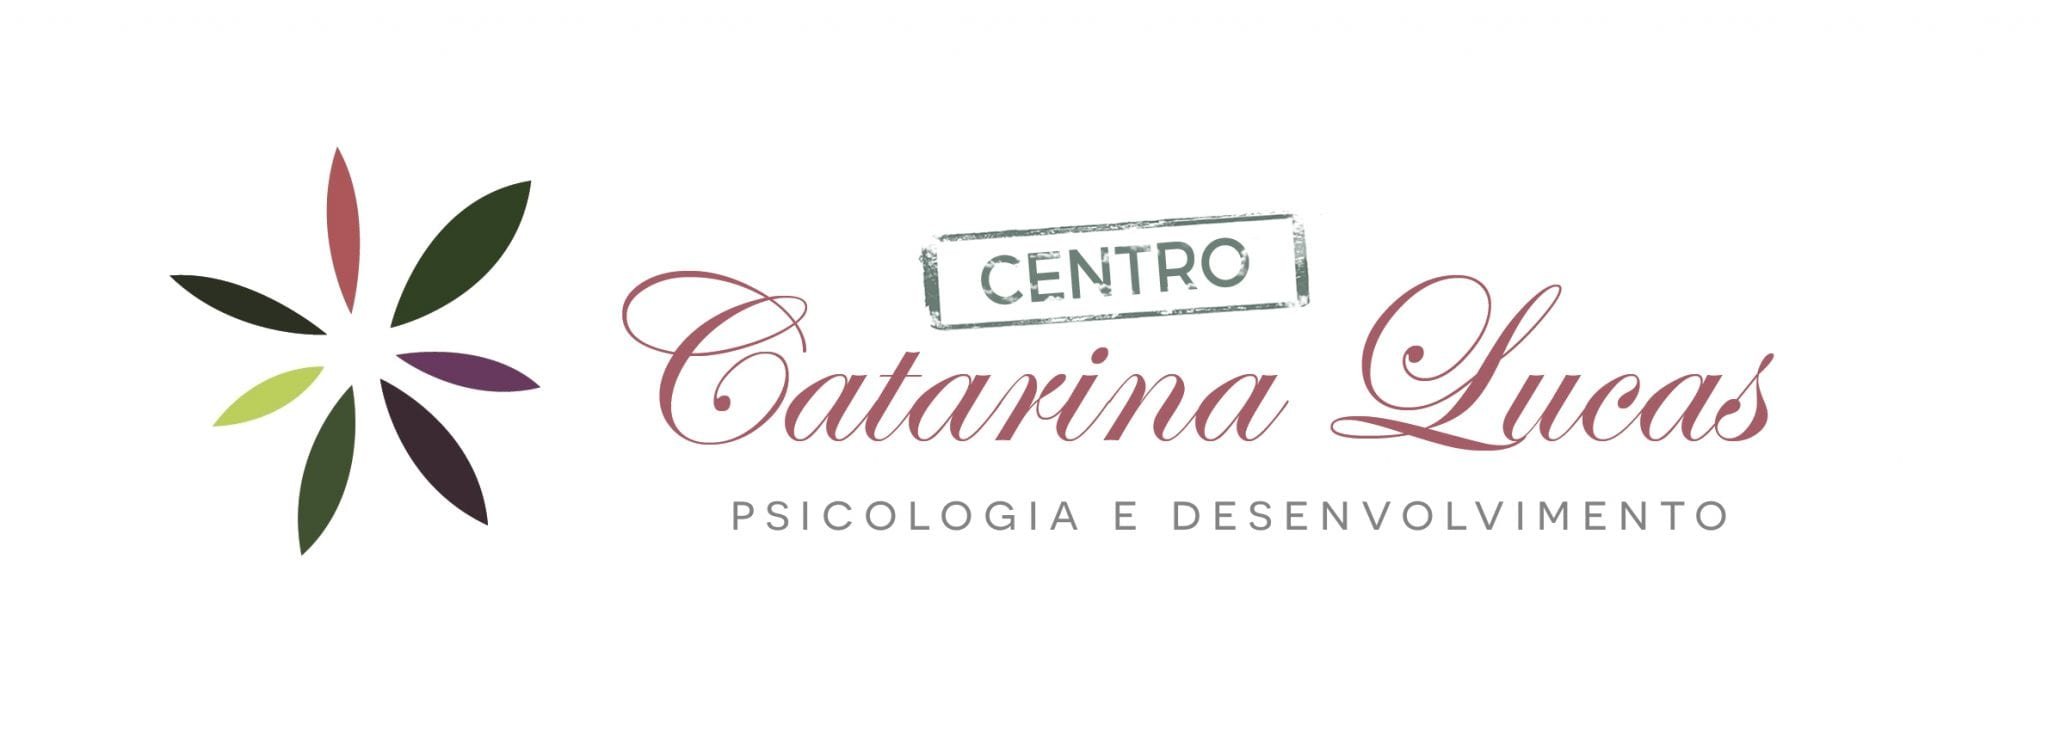 Centro Catarina Lucas